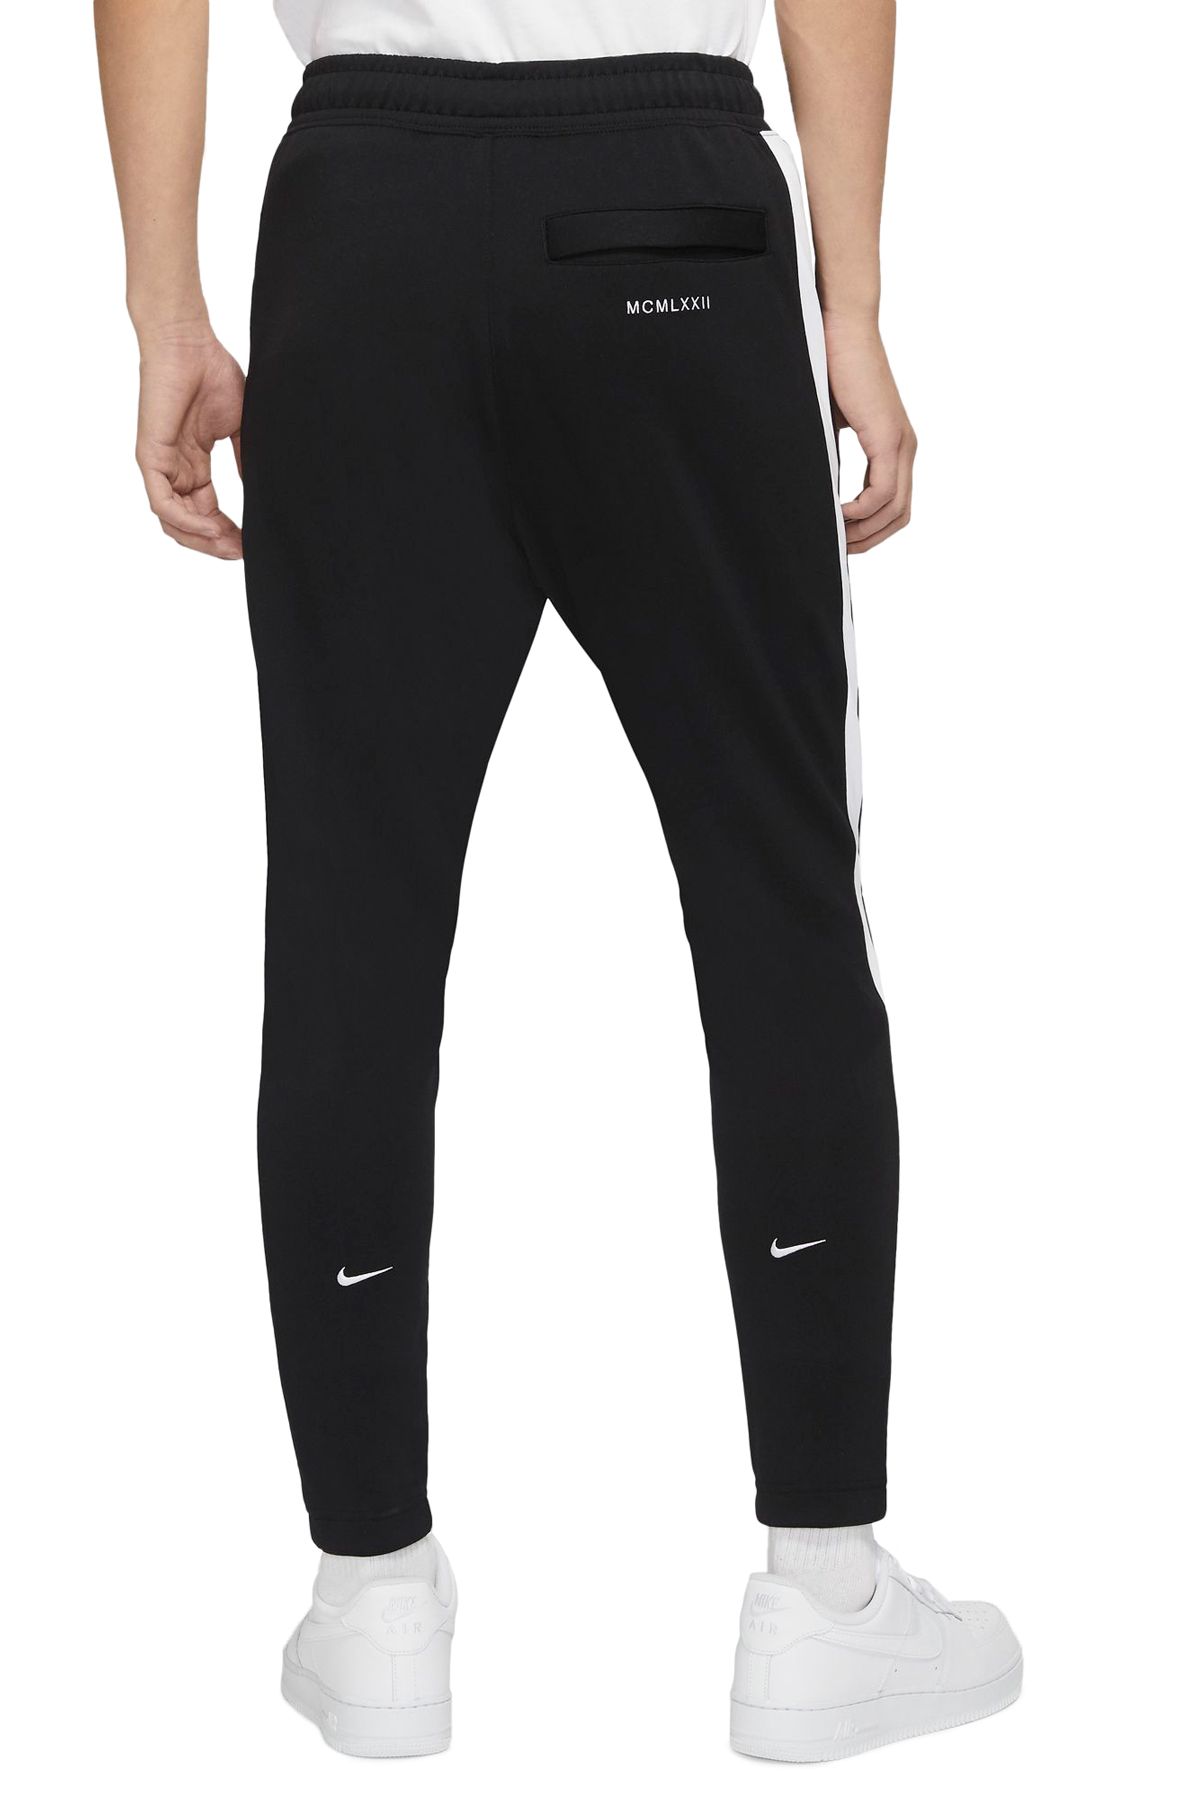 Nike Swoosh NSW Double Swoosh Track Pants Size XXL Black White CJ4873-010